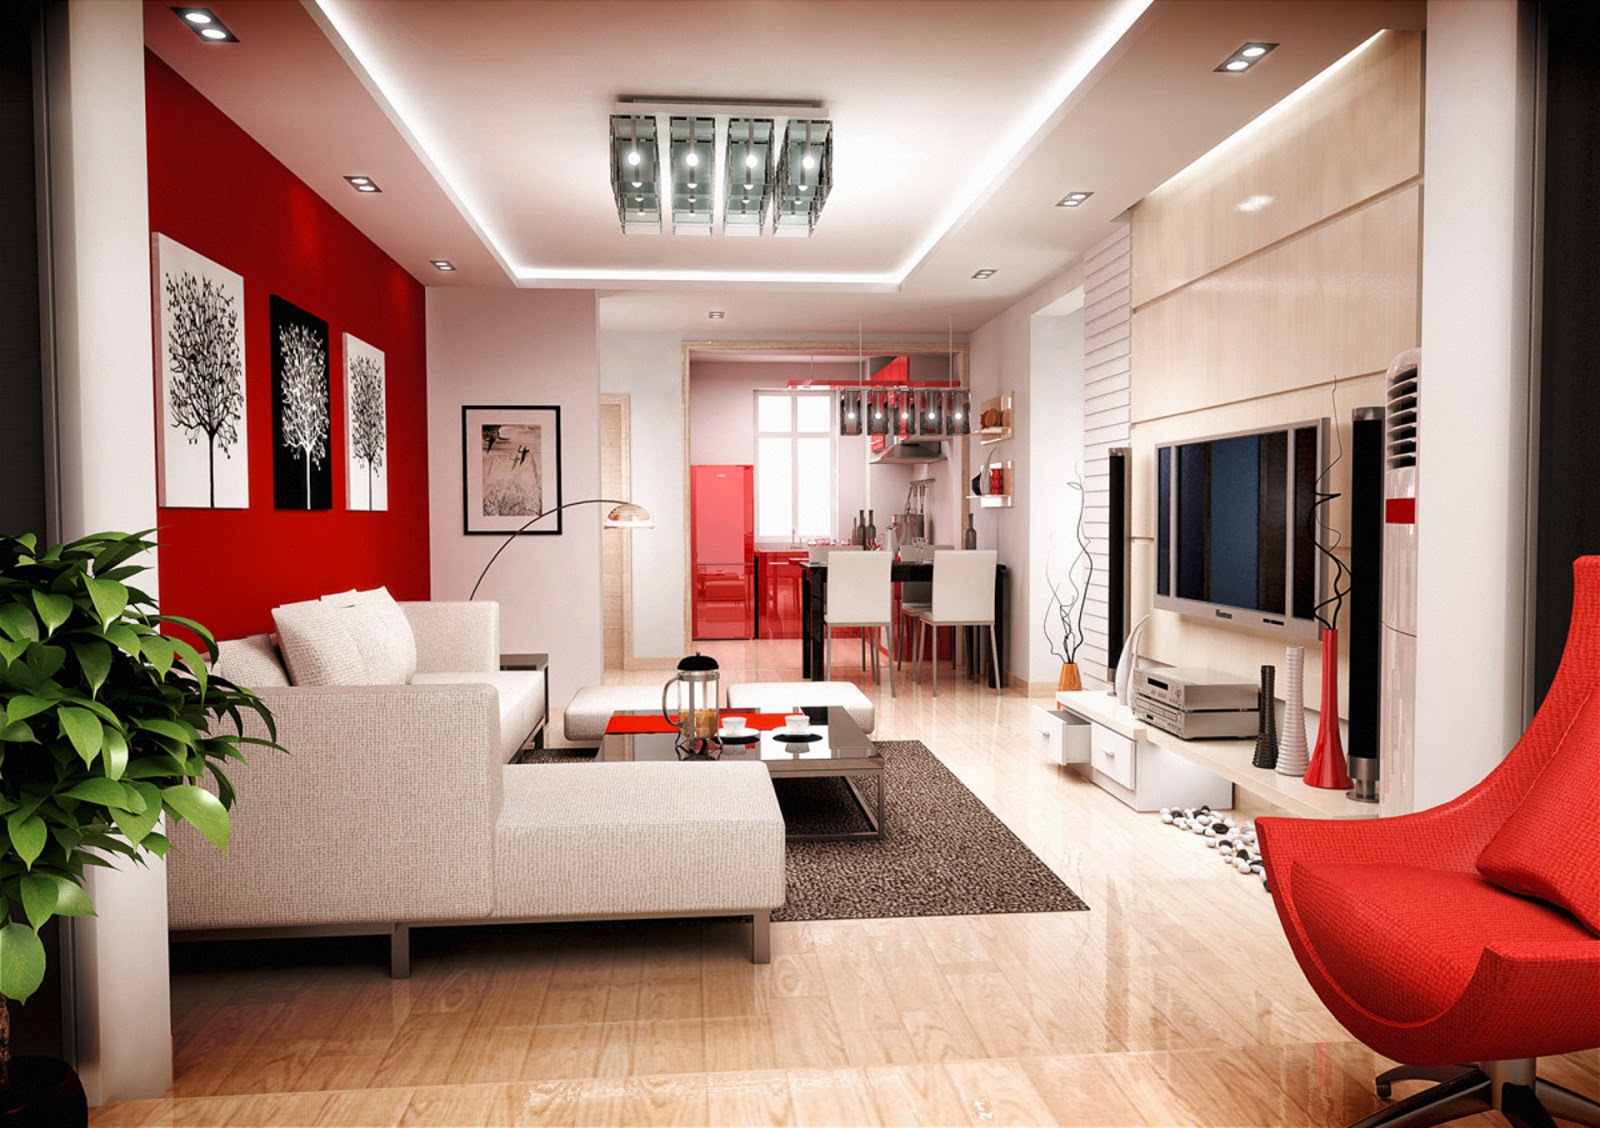 Ide Desain Ruang Tamu Minimalis Warna Merah Ide Desain Rumah